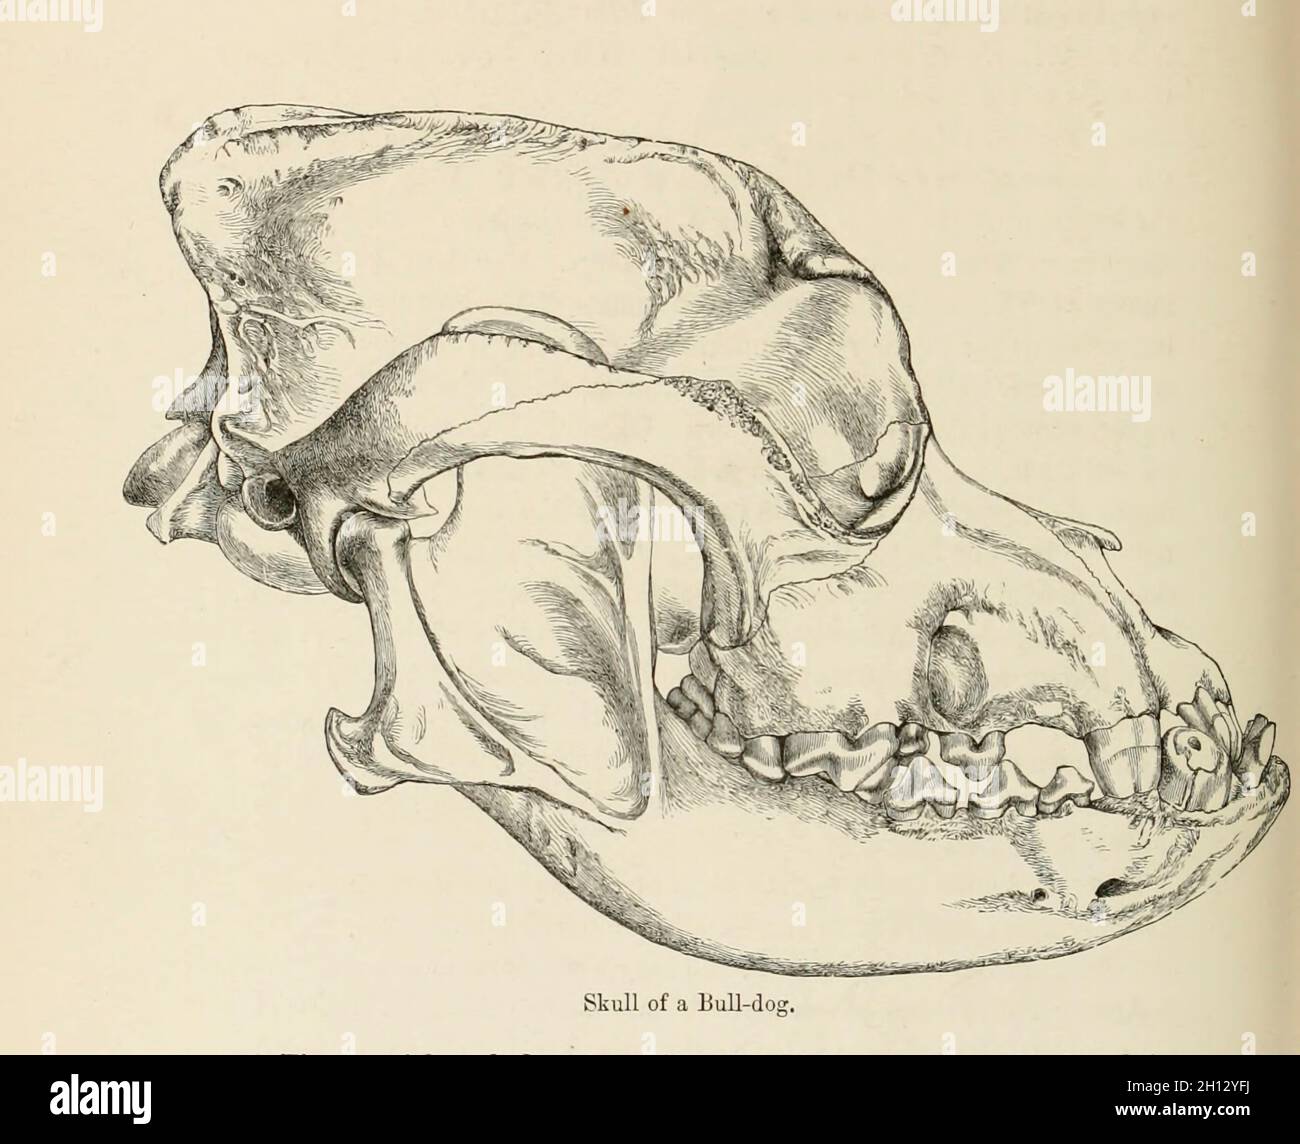 Crâne d'un bouledogue, illustration du XIXe siècle Banque D'Images